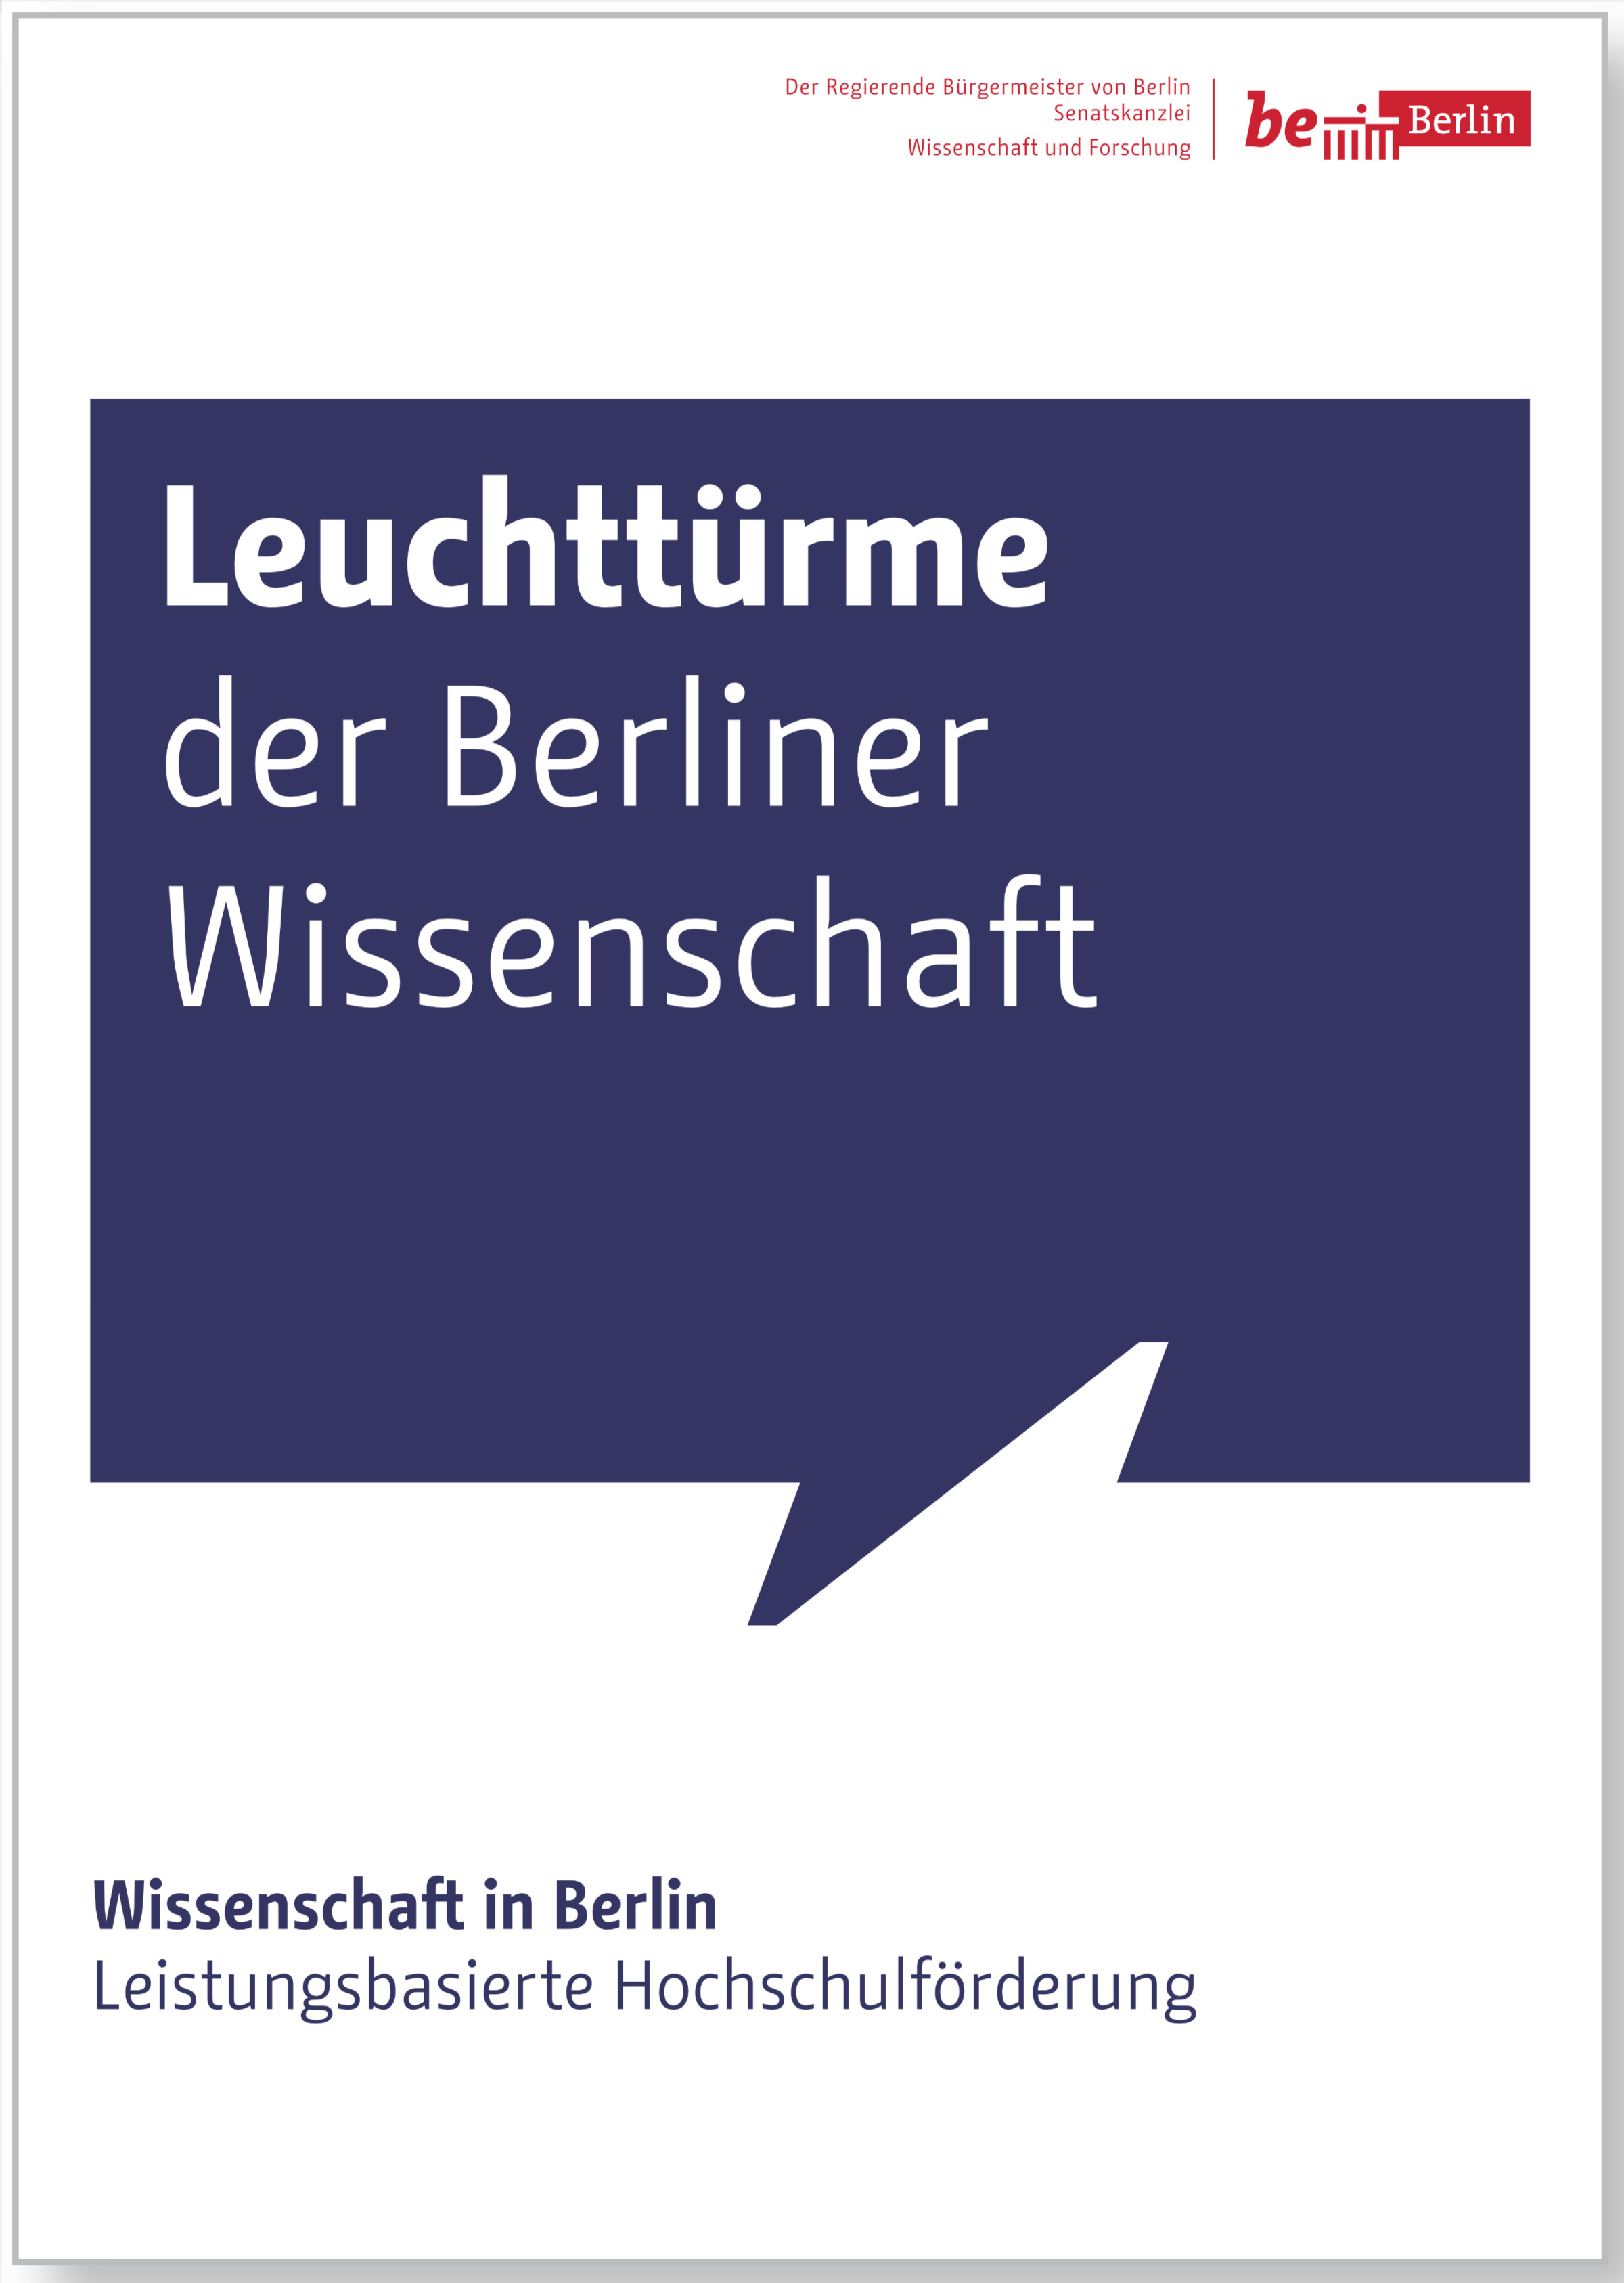 Die Schriftart Change im Einsatz als Hausschrift für Berlin – Titelblatt einer Broschüre